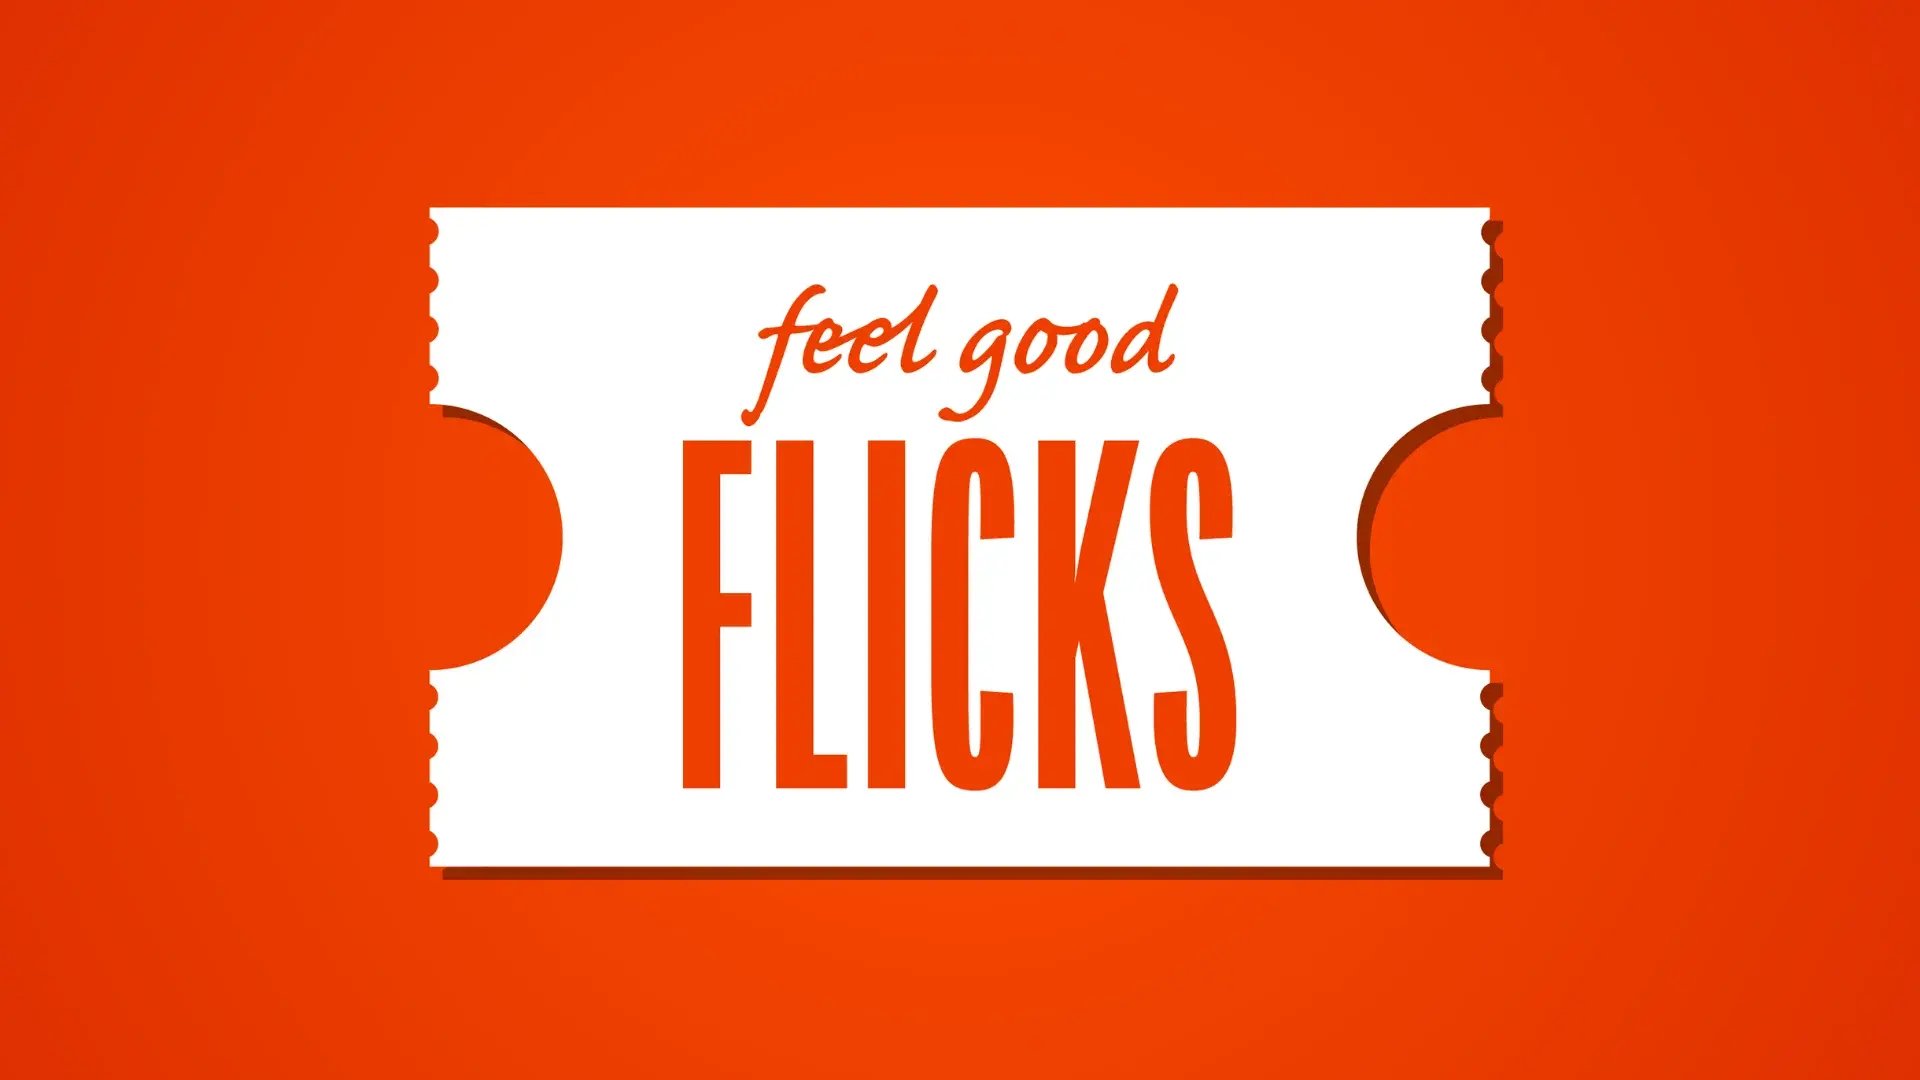 feel good flicks-2